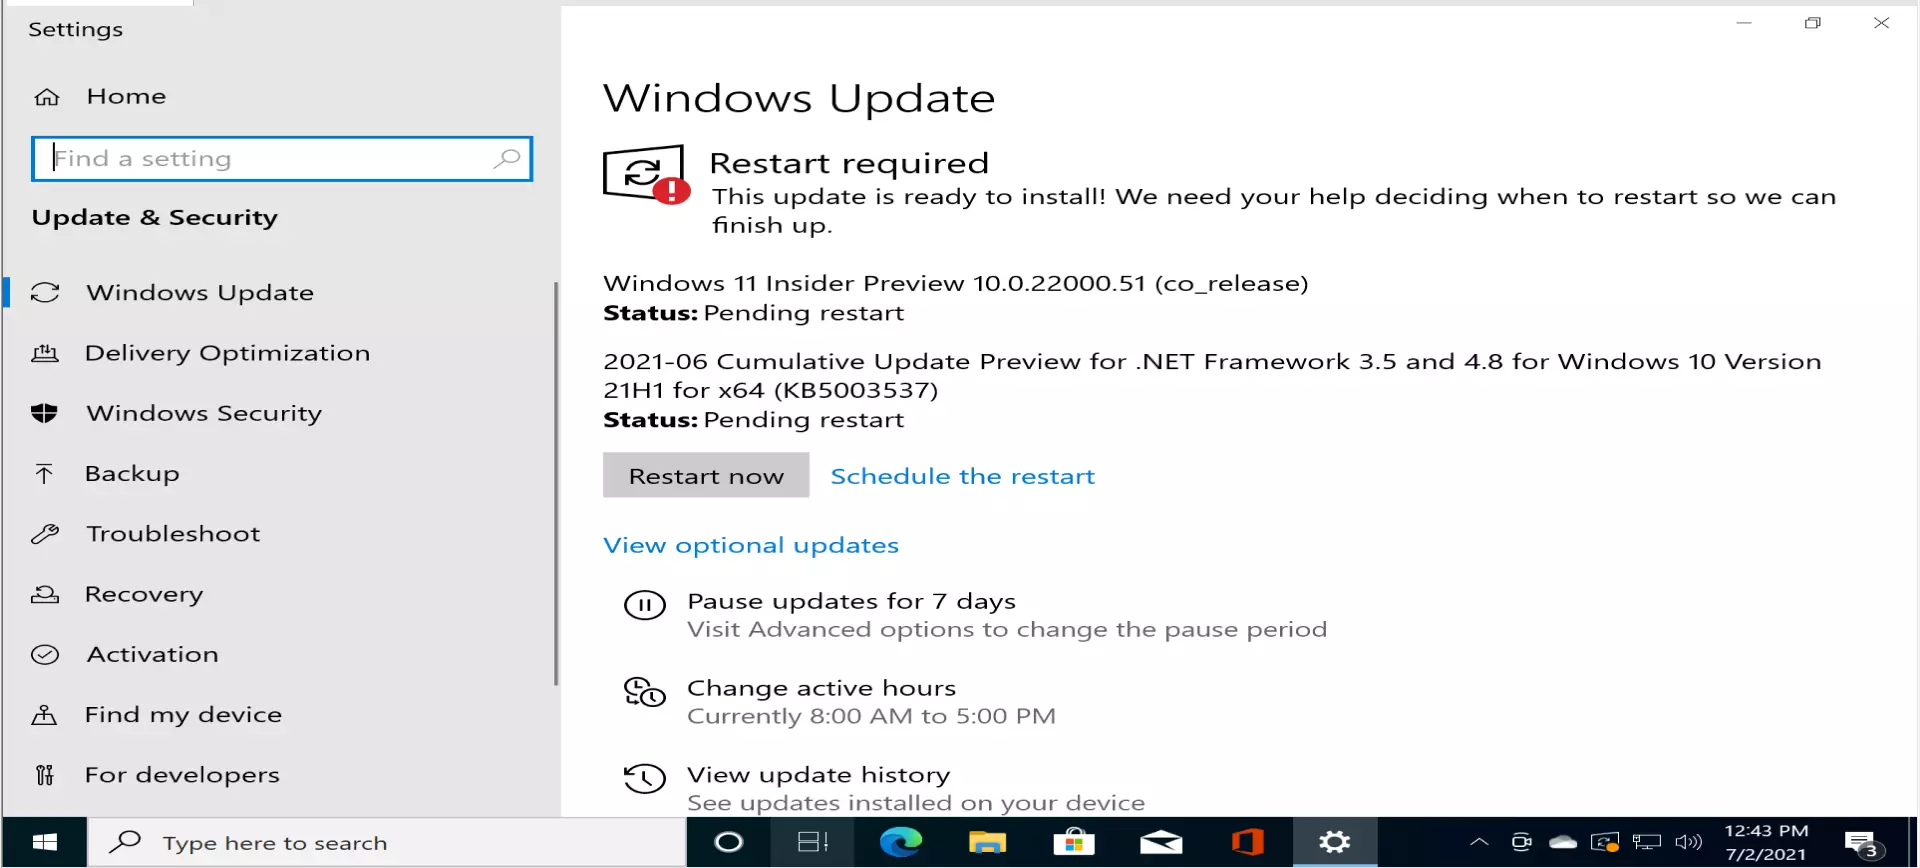 Windows 11 Insider Review Pending Restart